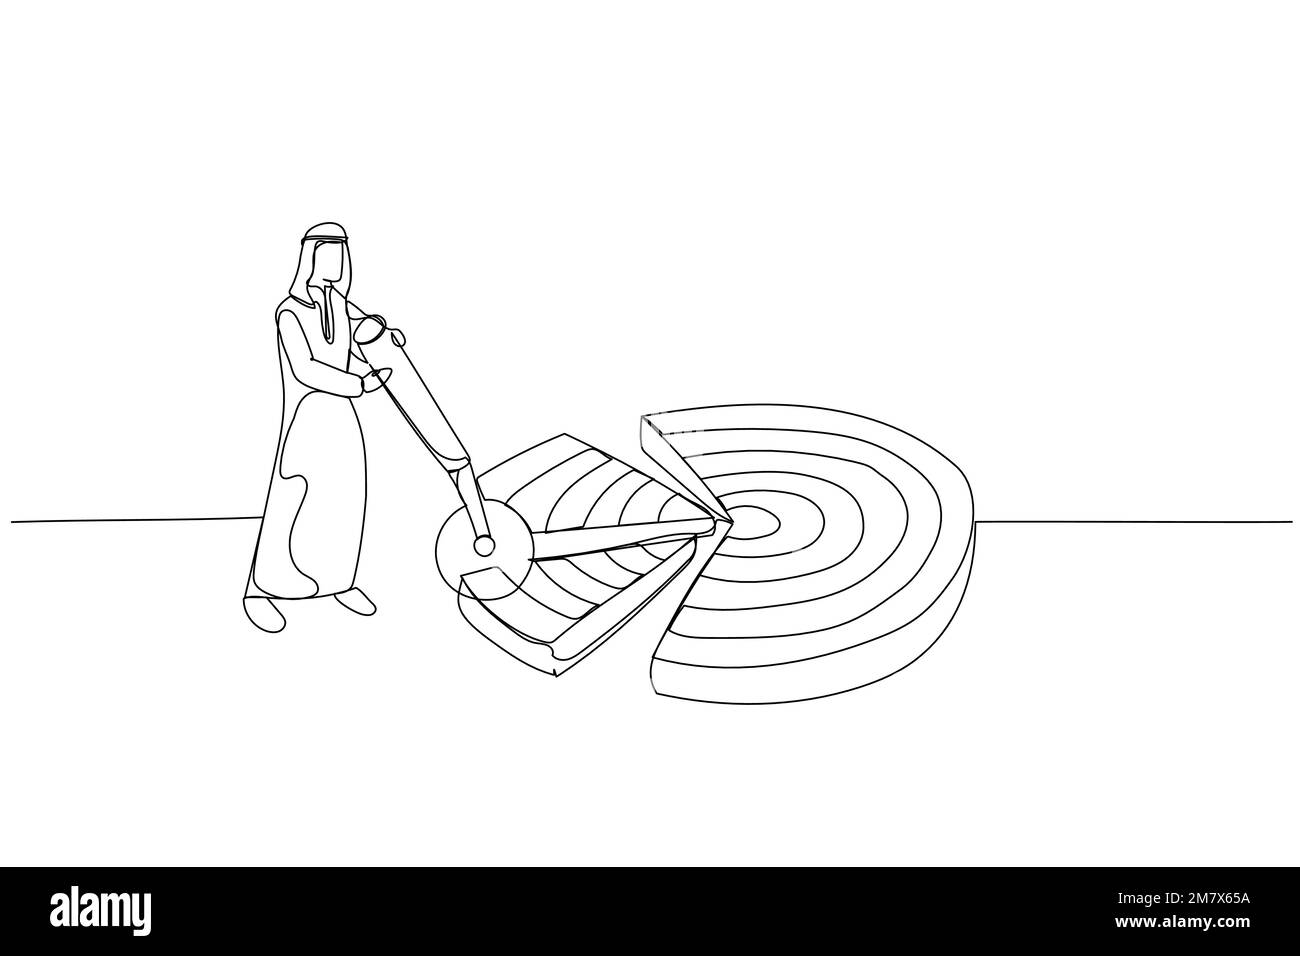 Der Cartoon eines arabischen Geschäftsmanns zerlegt Dartboard-Ziele in Stücke. Metapher für die Untergliederung eines großen Ziels in kleine erreichbare Ziele. Einzeiliger Kunststil Stock Vektor